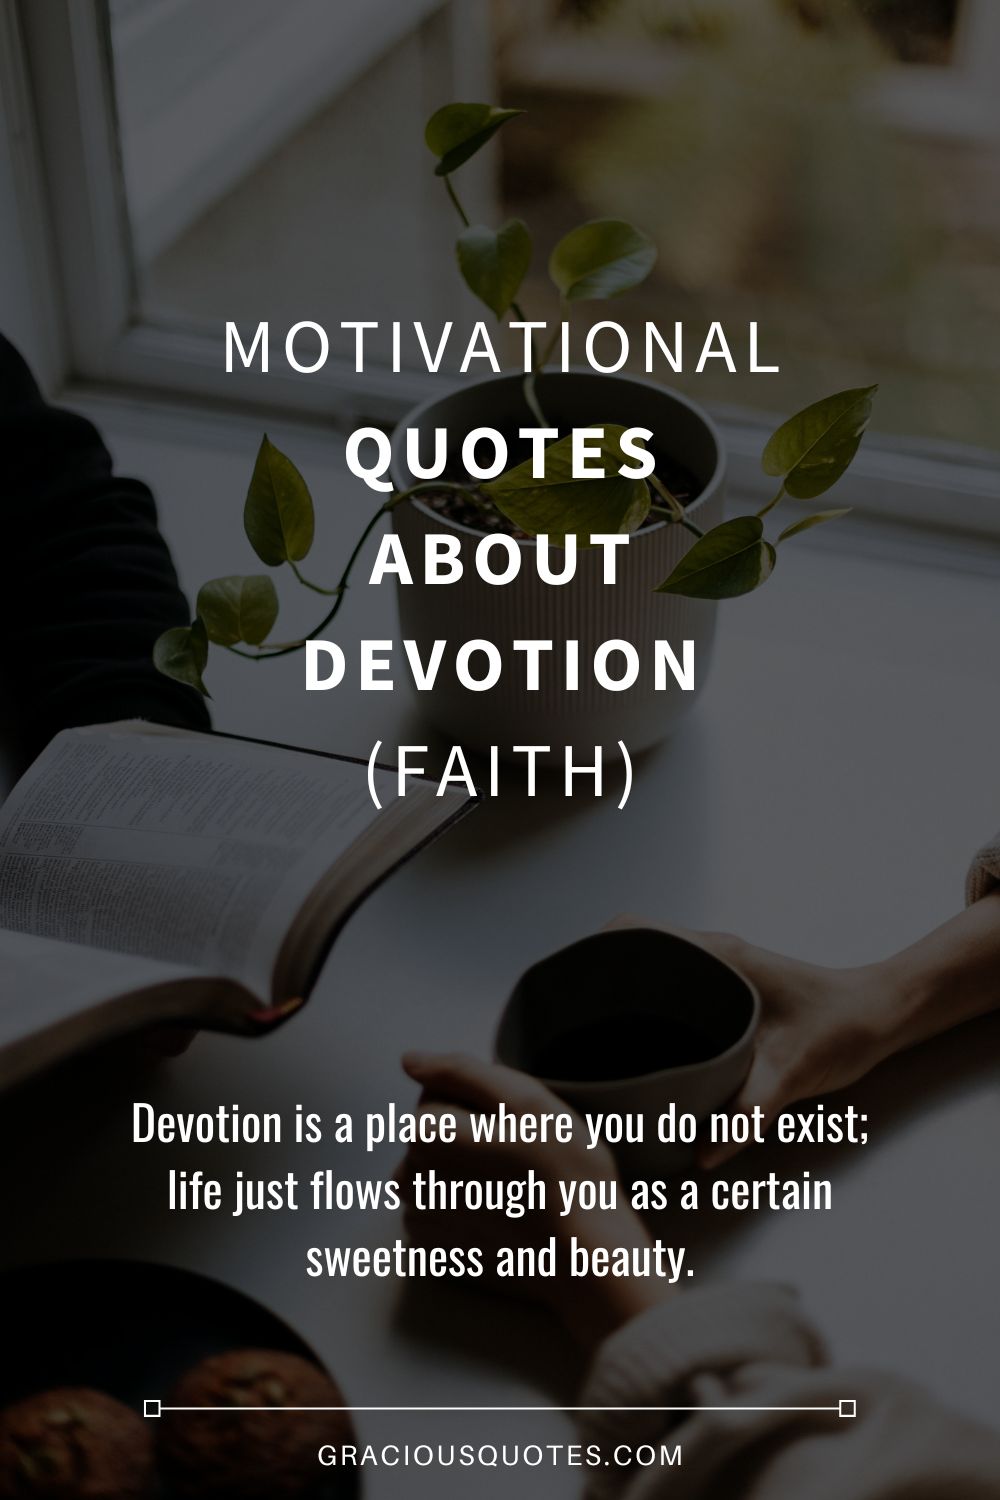 Motivational Quotes About Devotion (FAITH) - Gracious Quotes